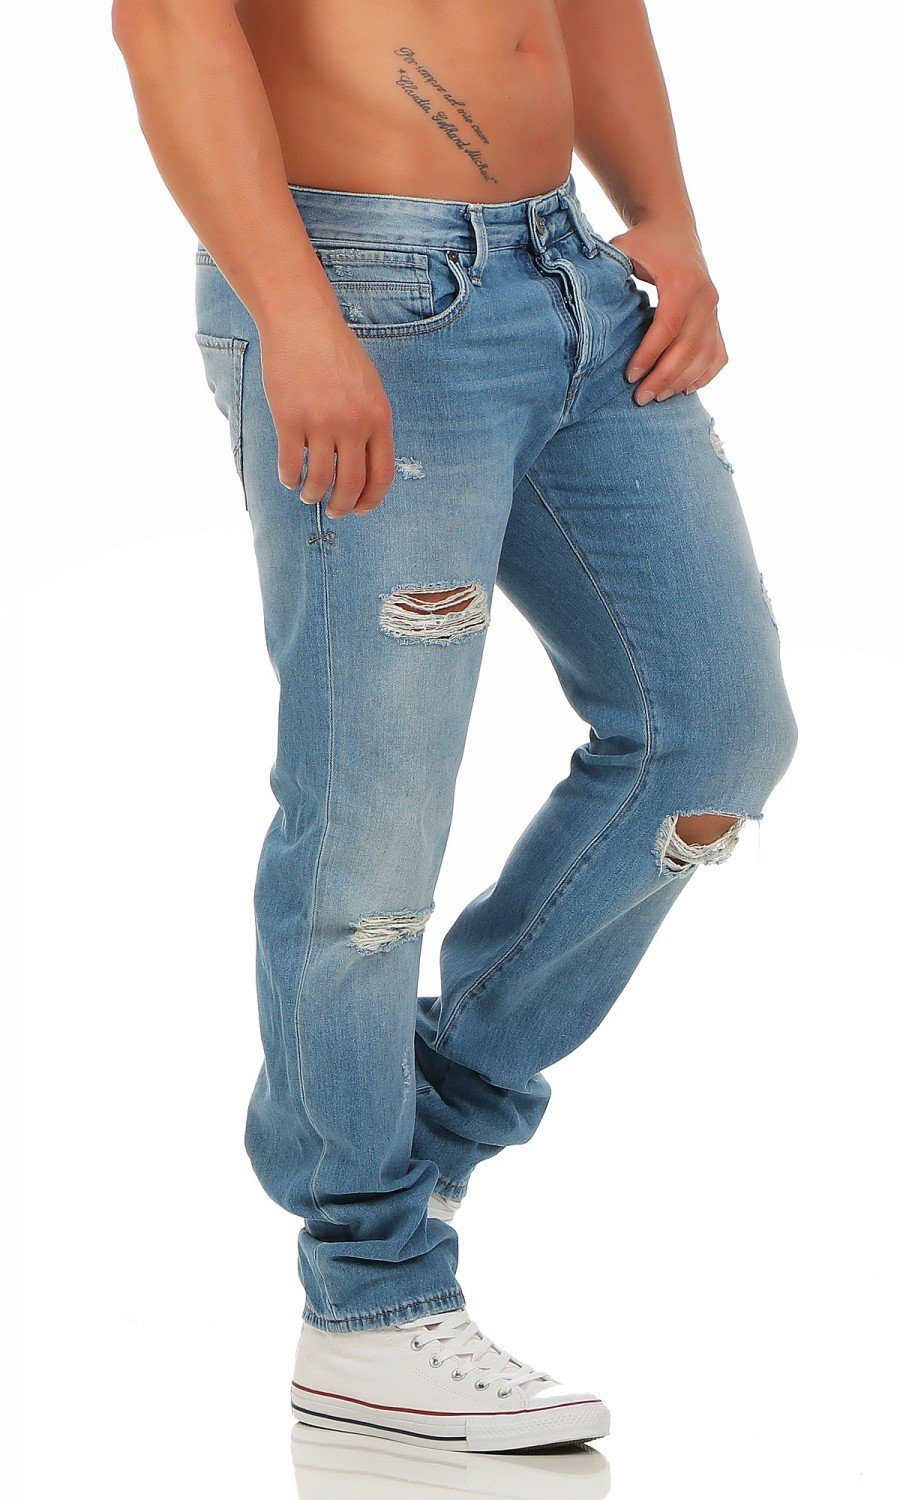 Jack Jones Jack & & BL734 Comfort Comfort-fit-Jeans Fit Jeans Vintage Herren Mike Jones